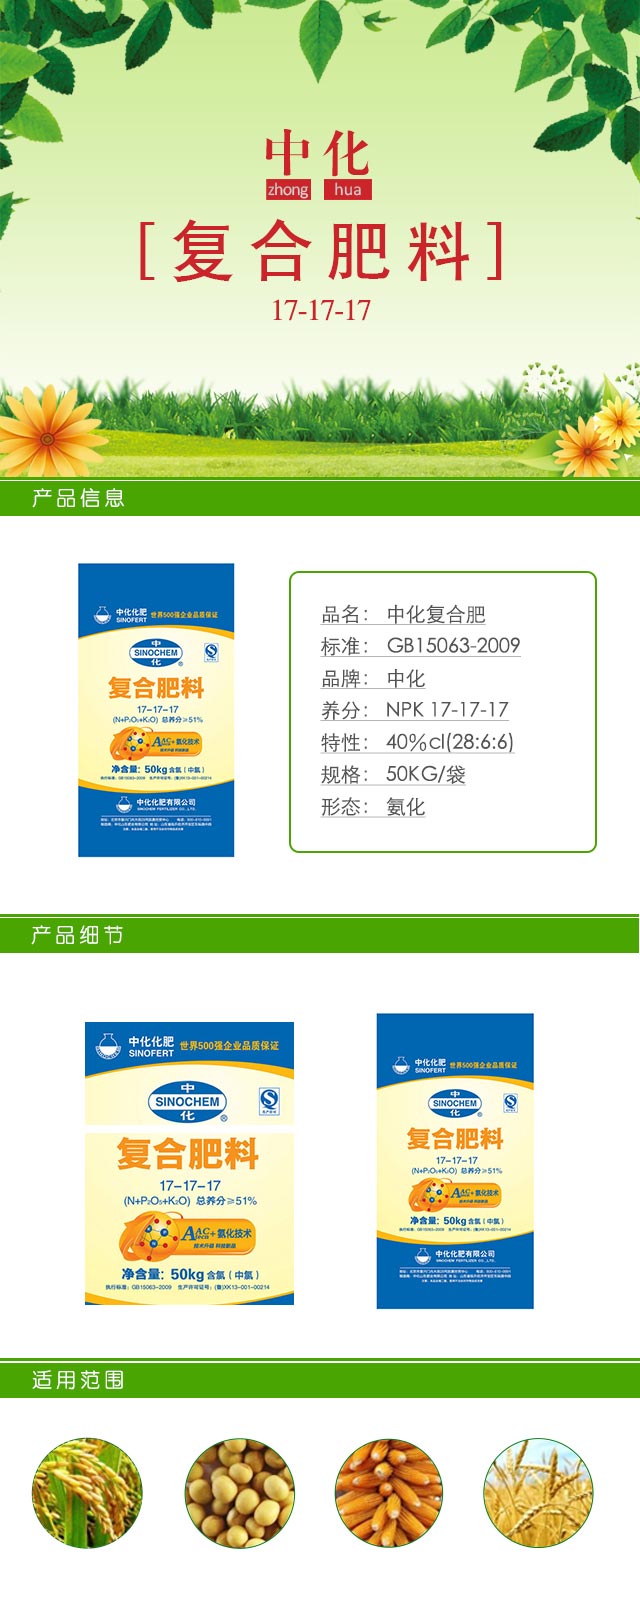 中化复合肥 品名 中化复合肥 标准 gb15063-2009 品牌 中化 形态